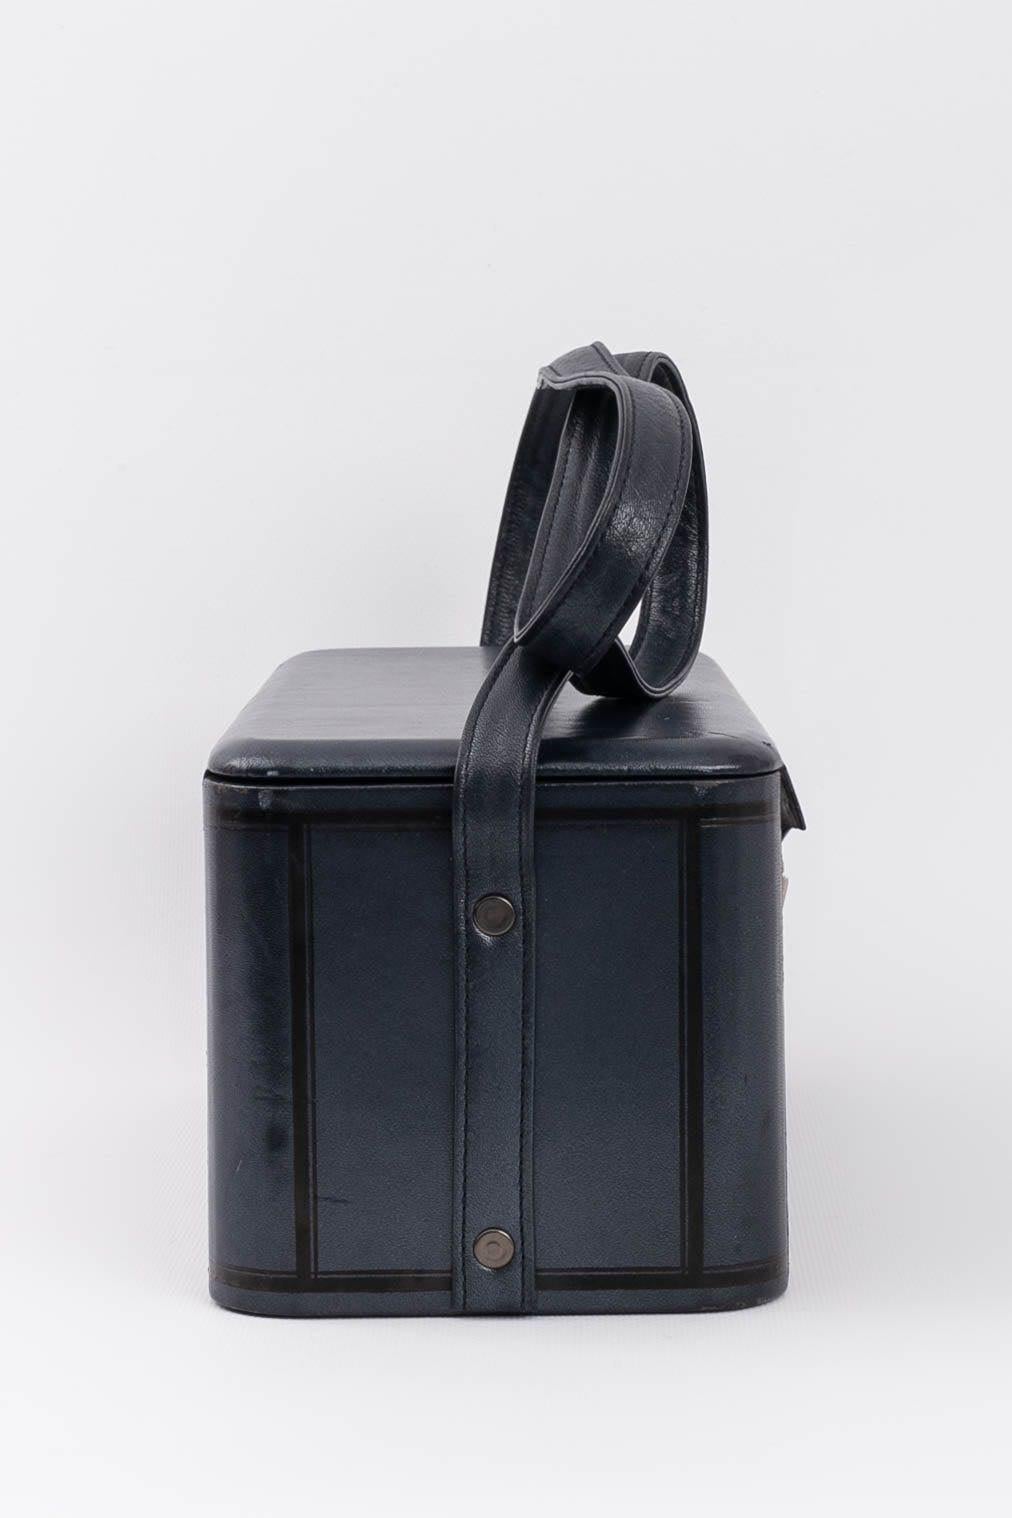 Chantal Thomass, Tasche „Box“-Tasche, 1986 Damen im Angebot